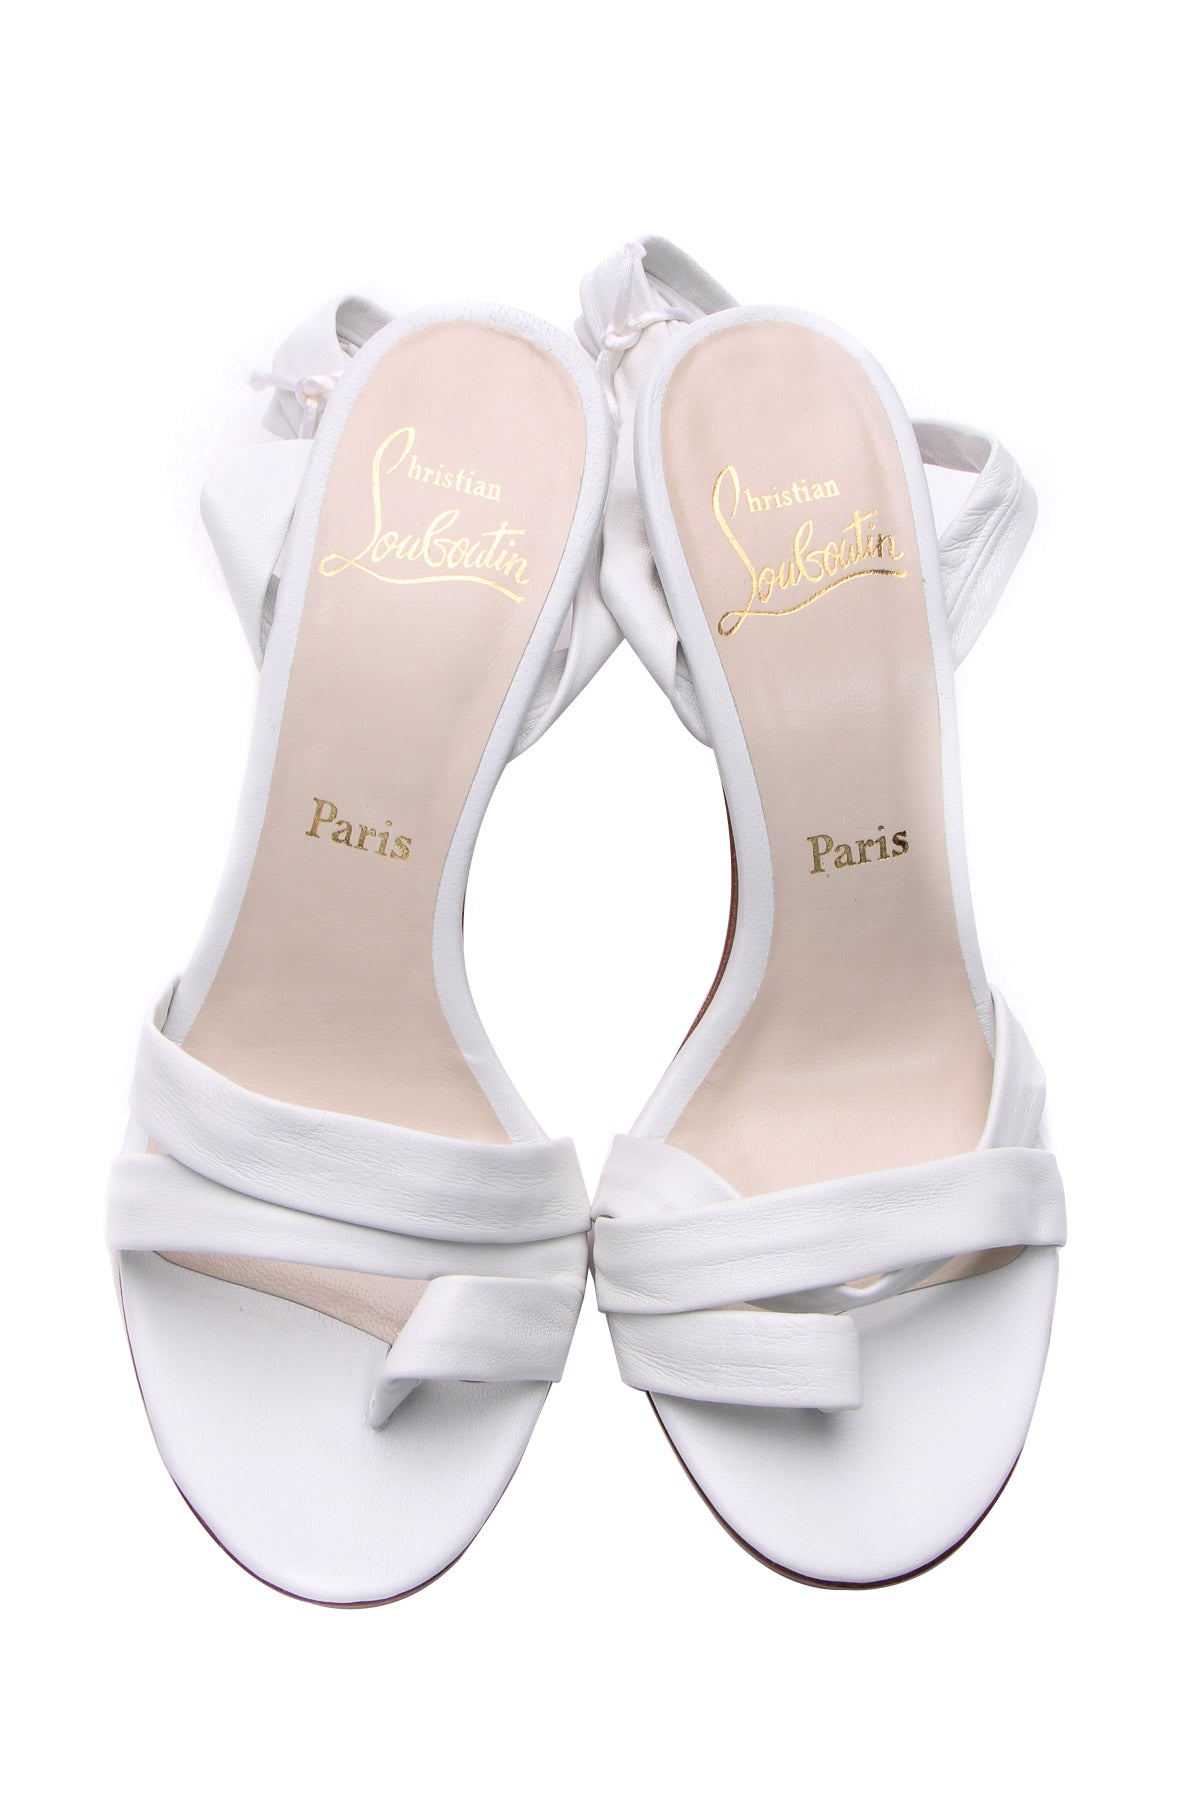 Louboutin Tribande Autographed Wrap Sandals - Size 37.5